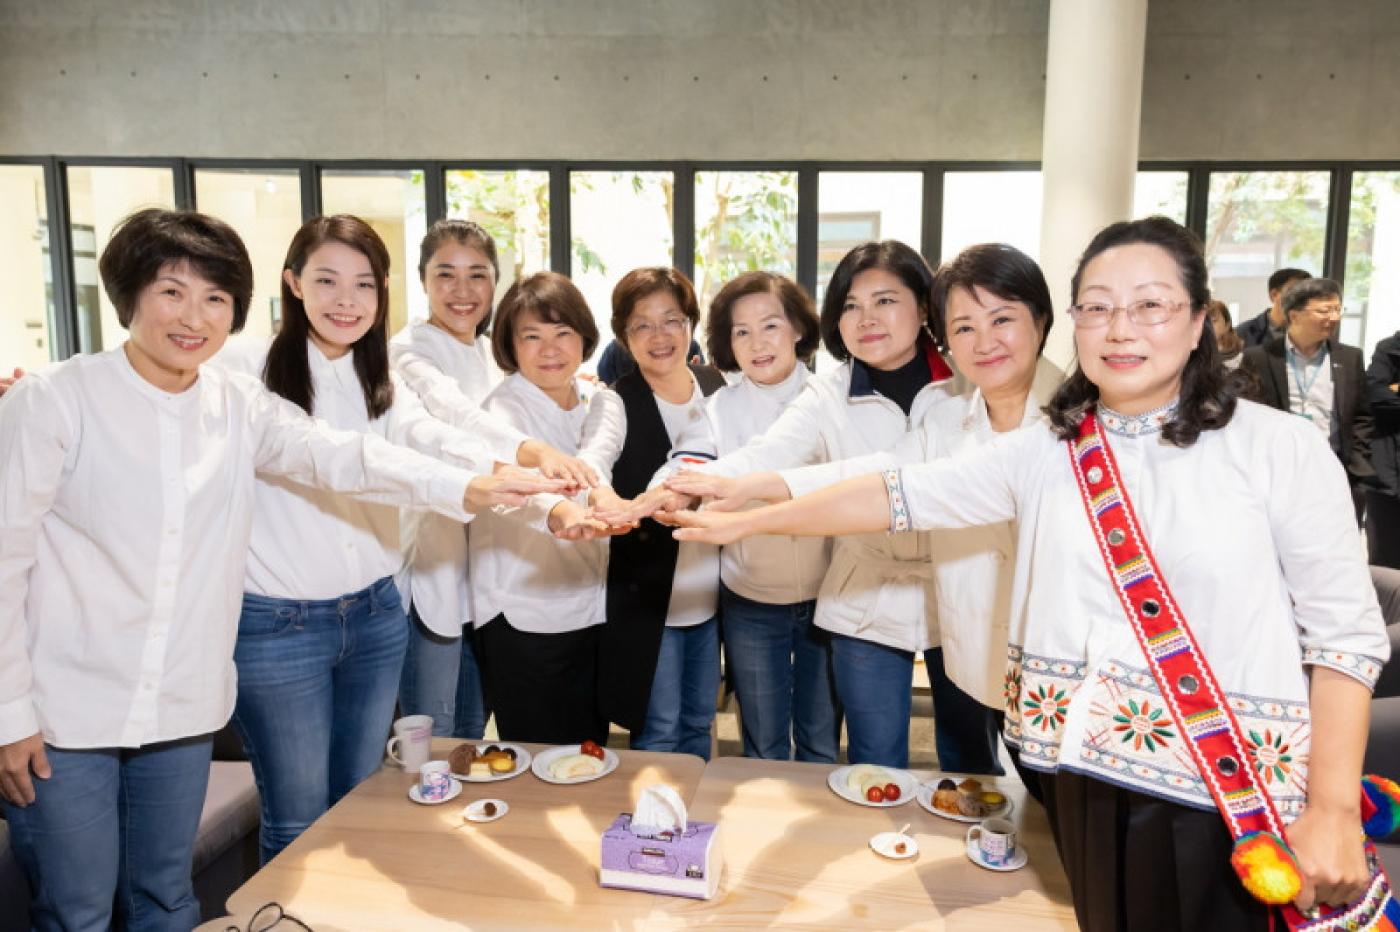 由9位女性縣市長組成的「女力縣市長聯盟」18日齊聚南投縣中興新村。南投縣政府提供